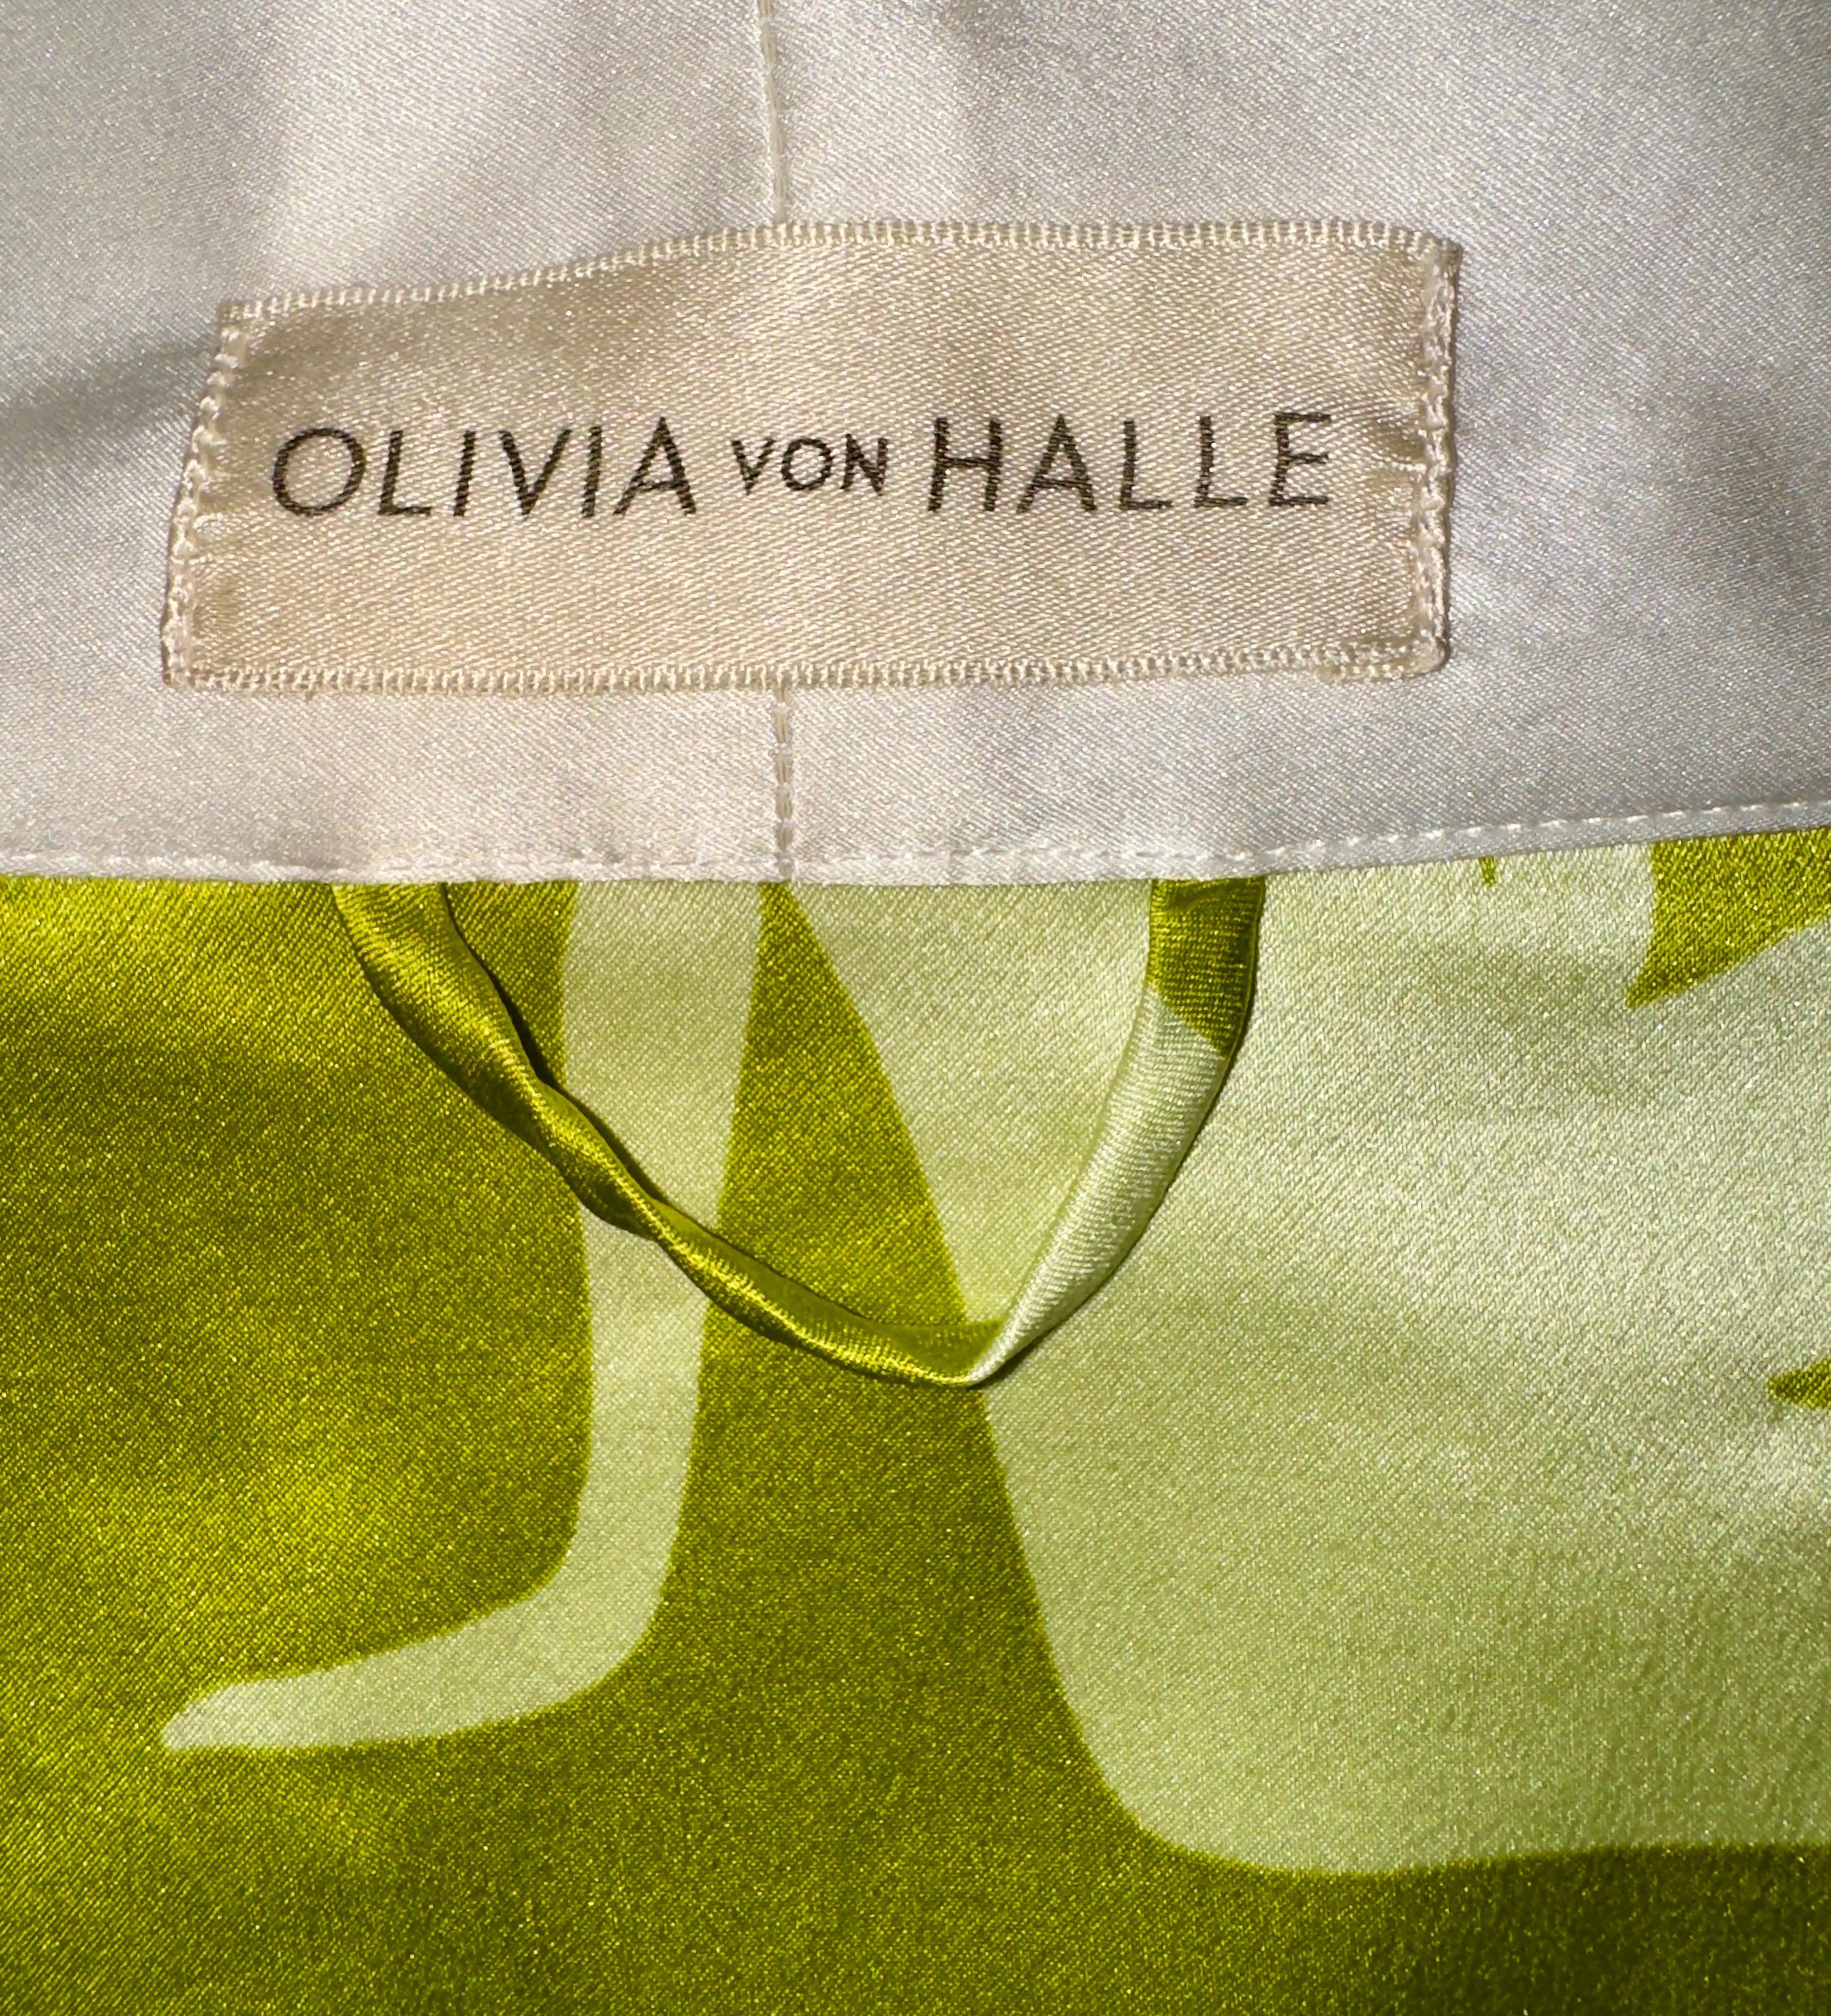 OLIVIA VON HALLE Lime Silhouette Print Silk Dressing Gown Kimono Robe OS 2